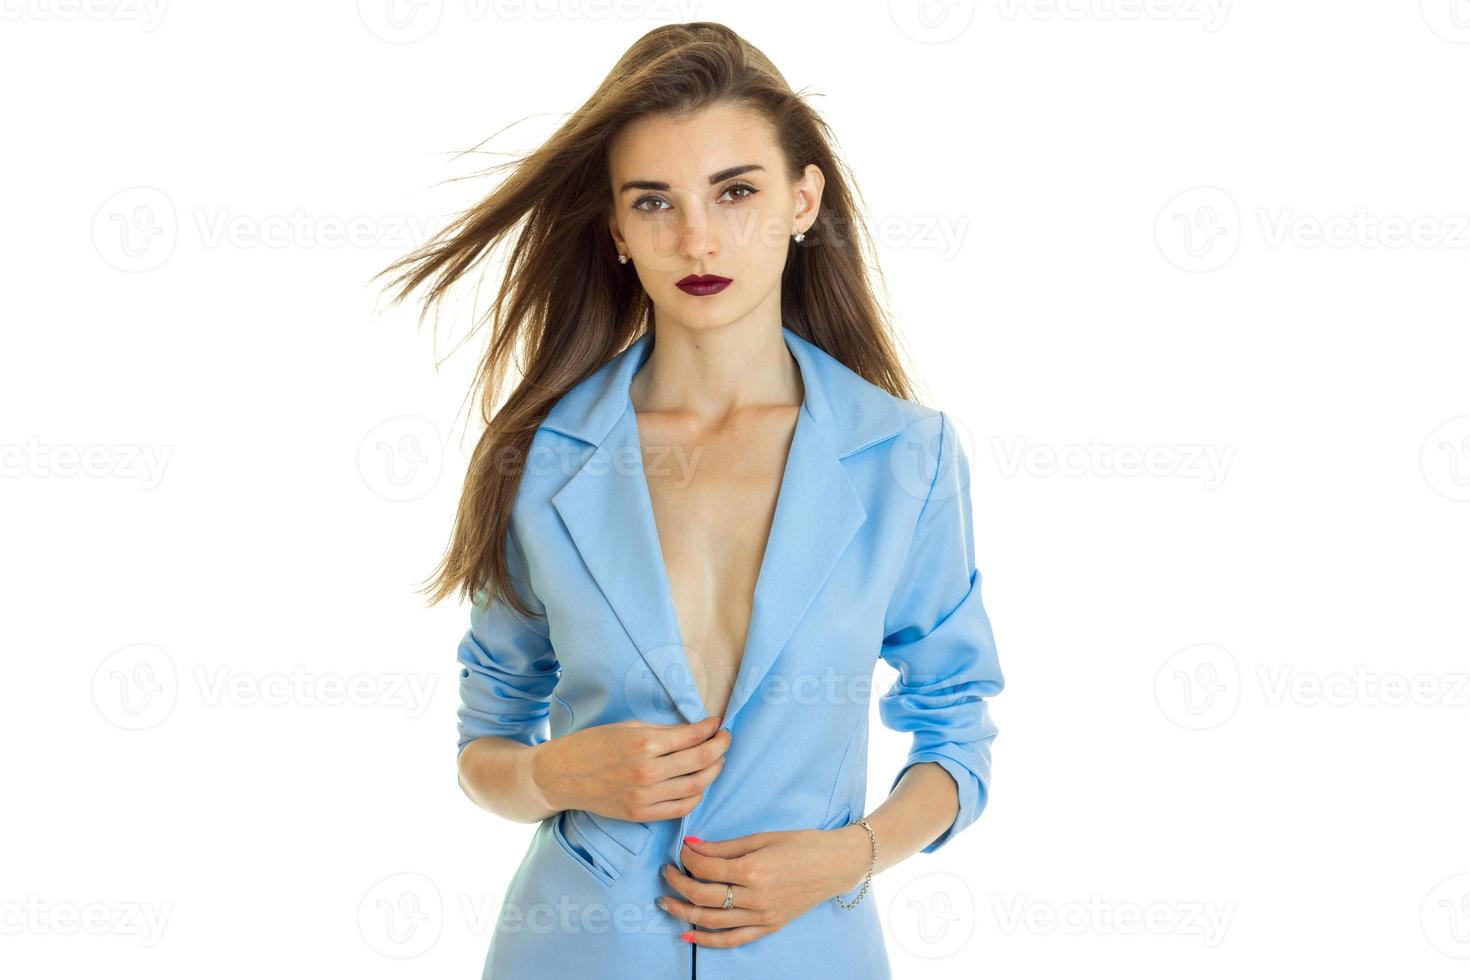 sensueel portret van een jong meisje met donker lippenstift en helder jasje foto